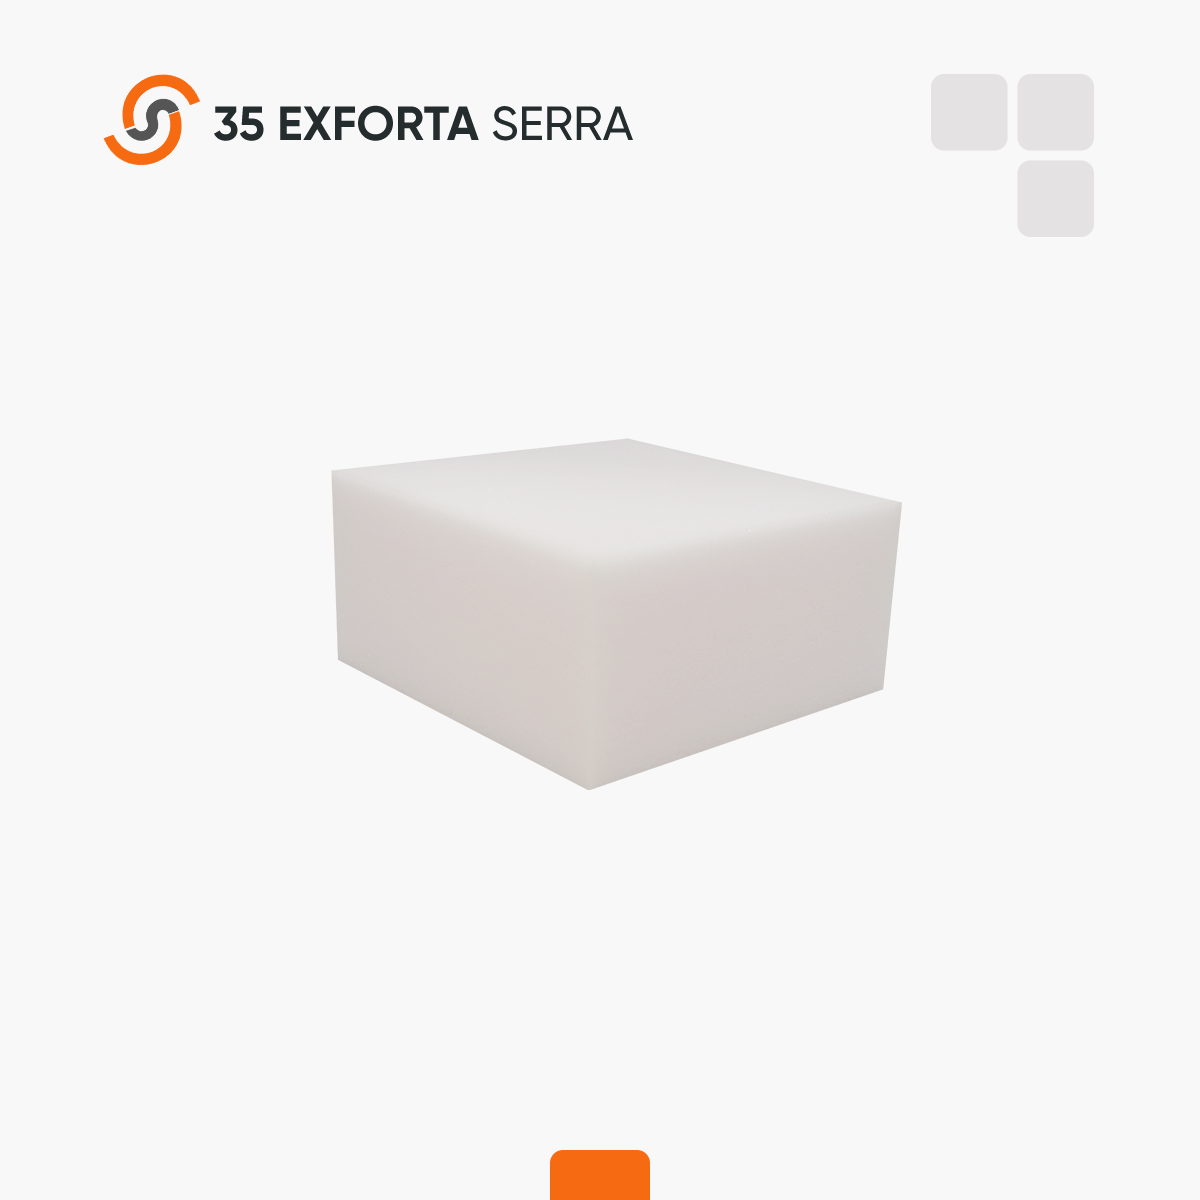 35 Exforta Serra